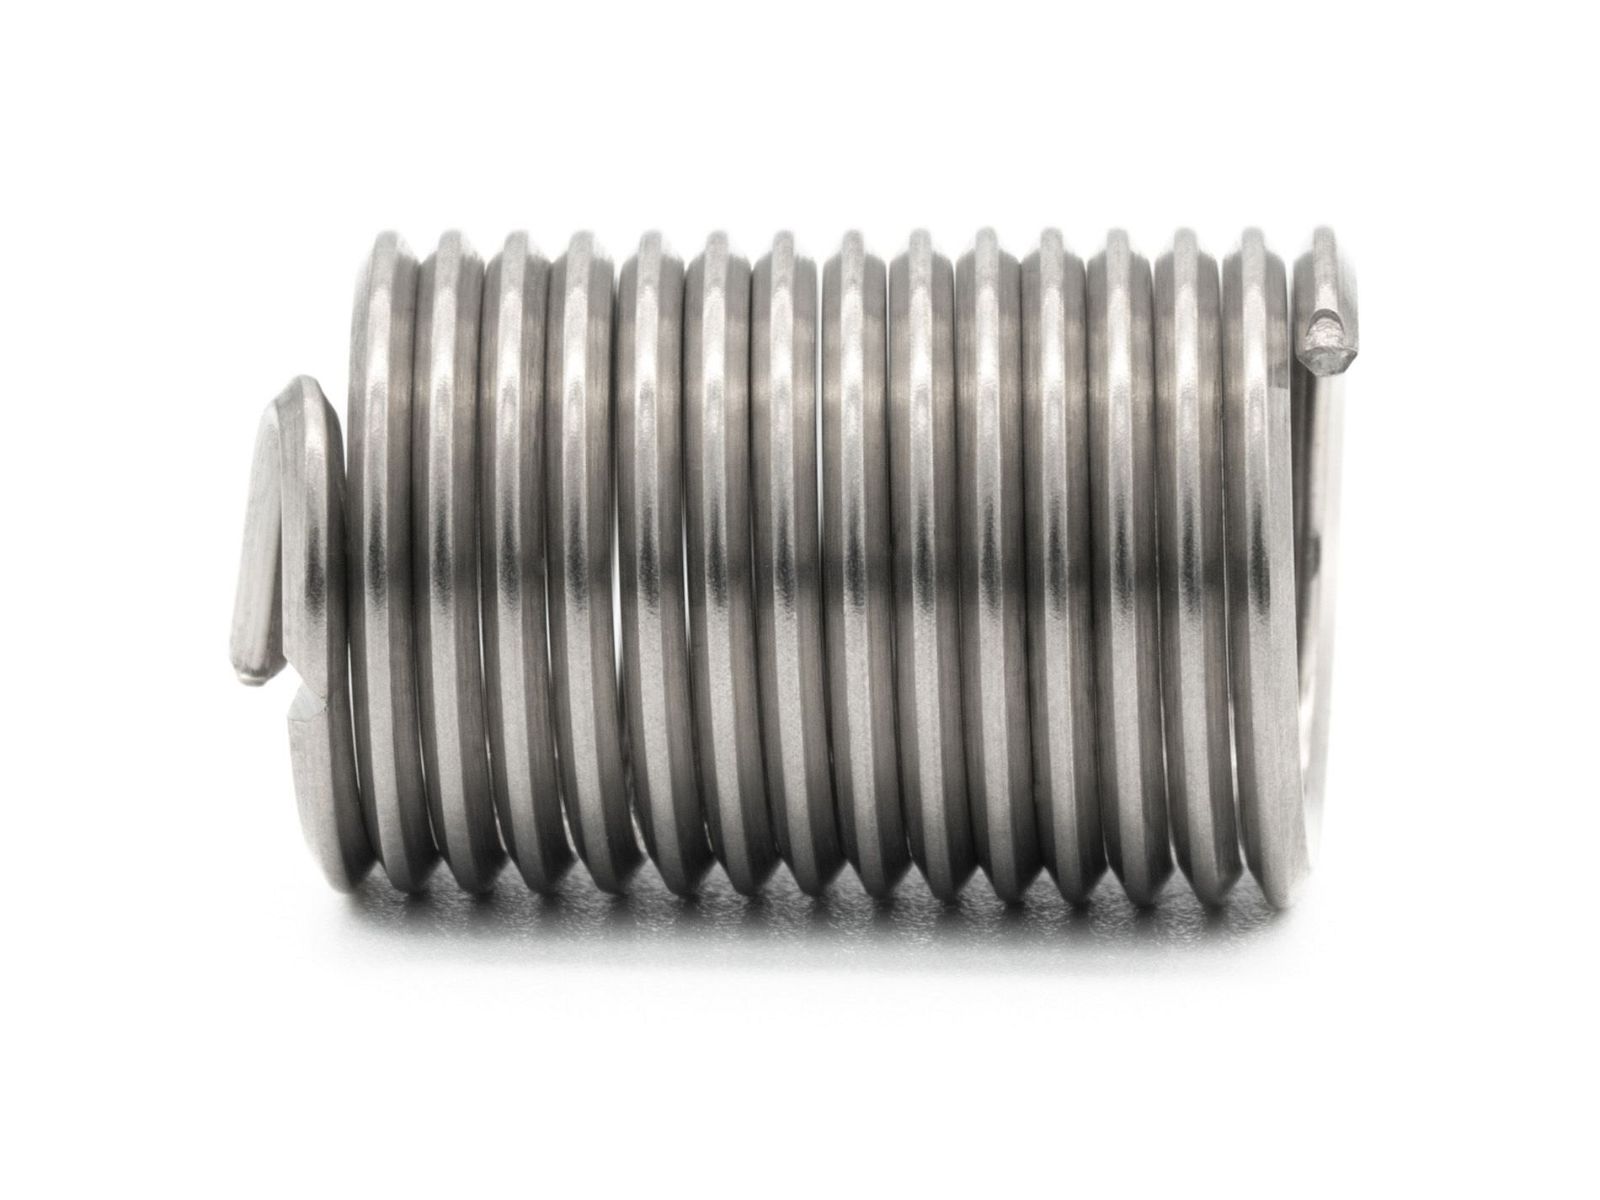 BaerCoil Wire Thread Inserts UNC 3/4 x 10 - 2.5 D (47.63 mm) - free running - 25 pcs.